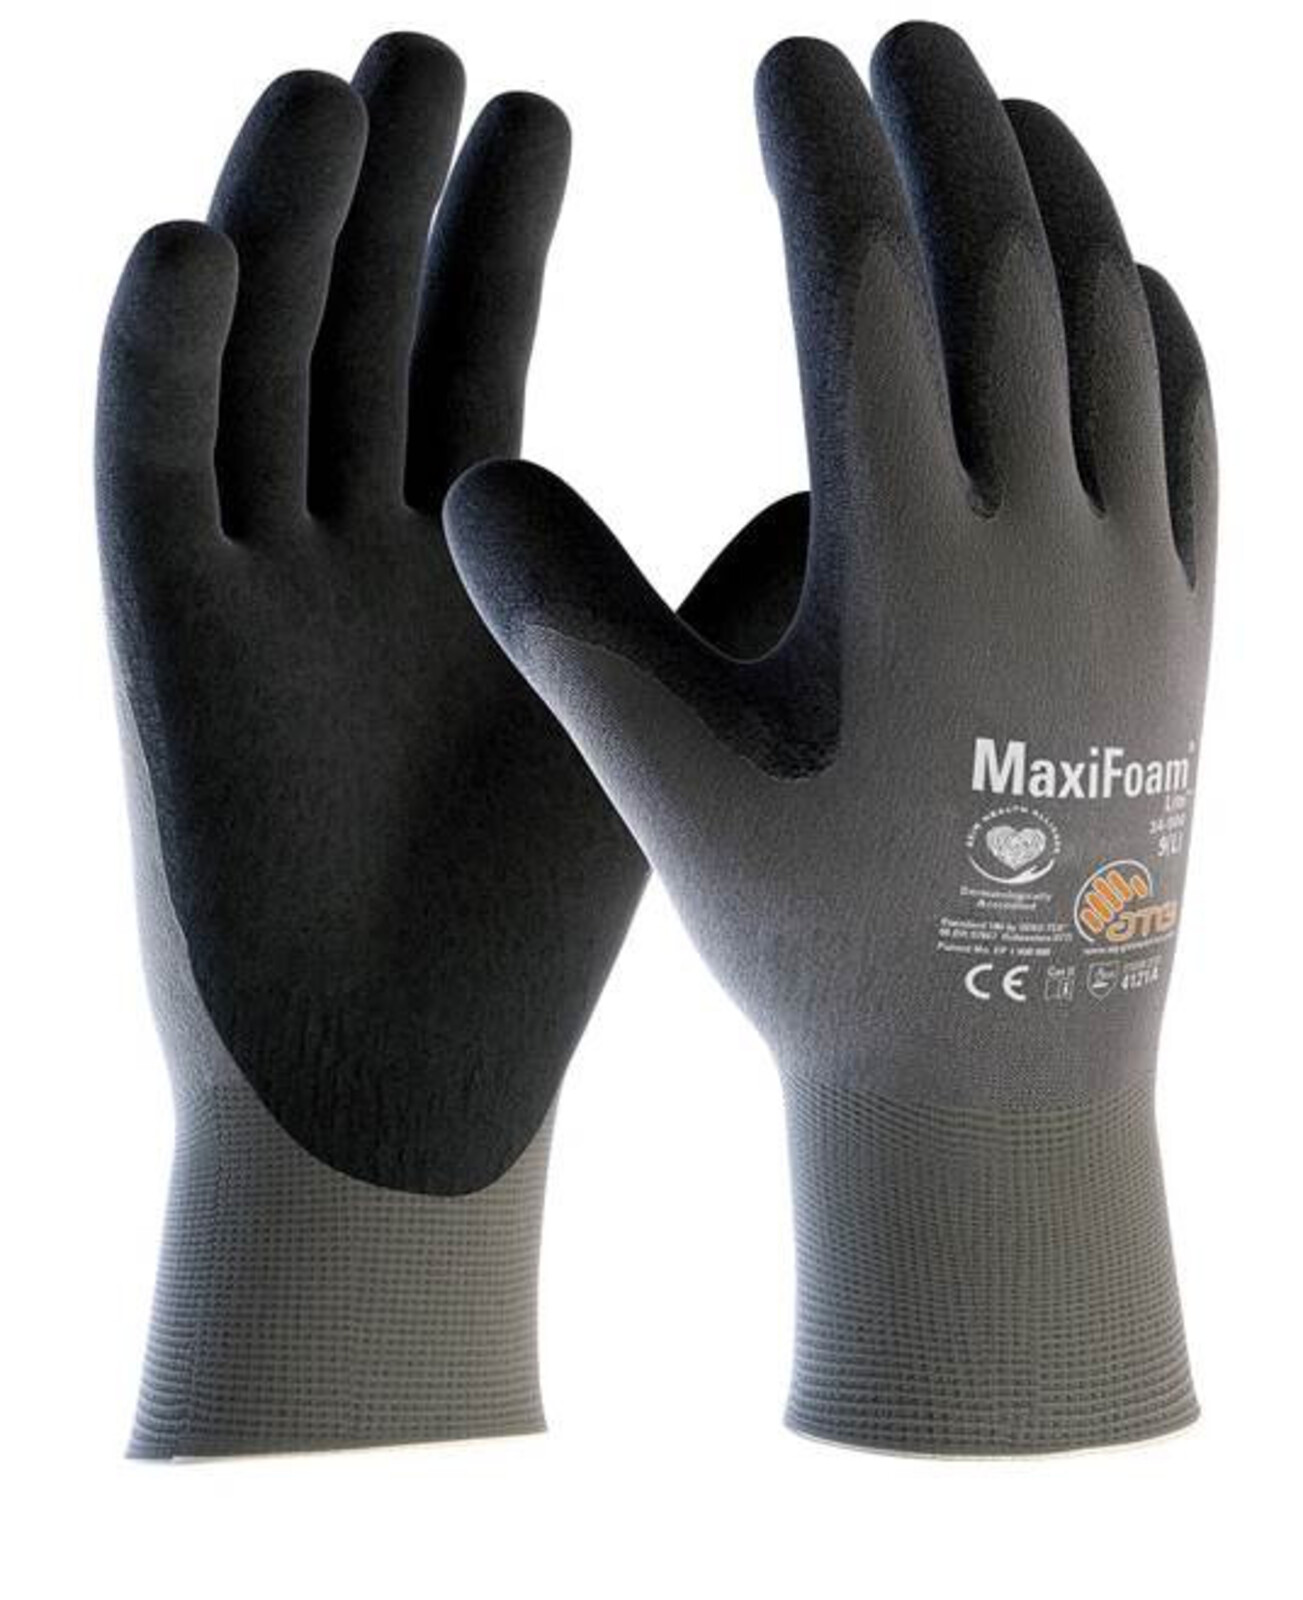 Pracovné rukavice ATG MaxiFoam LITE 34-900 (12 párov) - veľkosť: 10/XL, farba: sivá